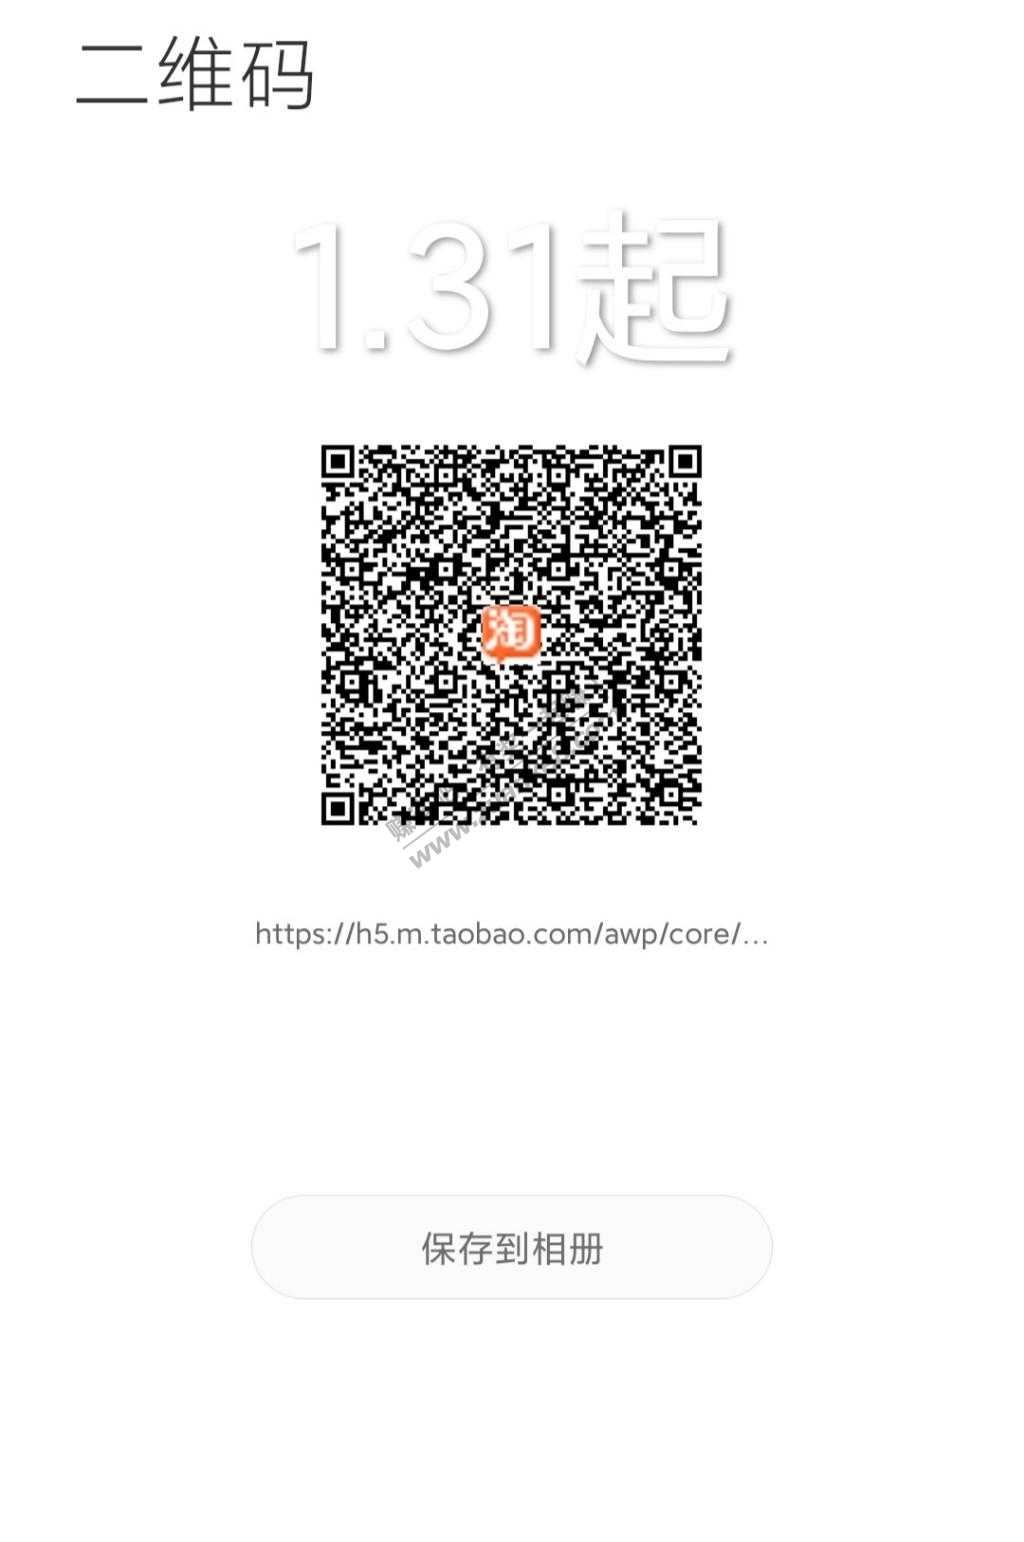 更新-签到红包q币入口-惠小助(52huixz.com)